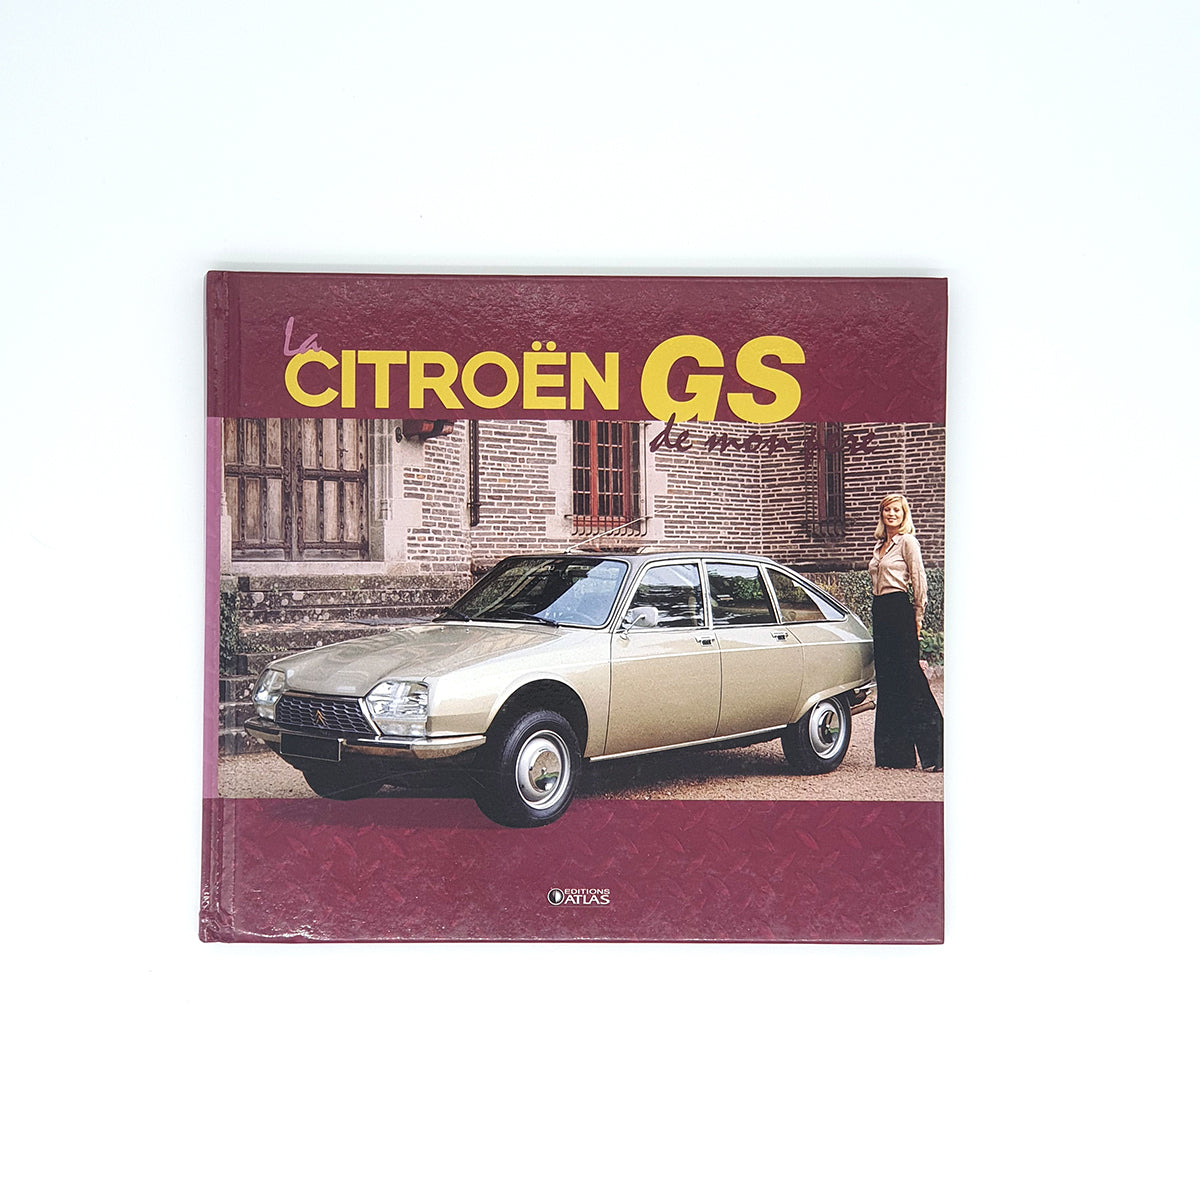 La Citroën GS de mon père